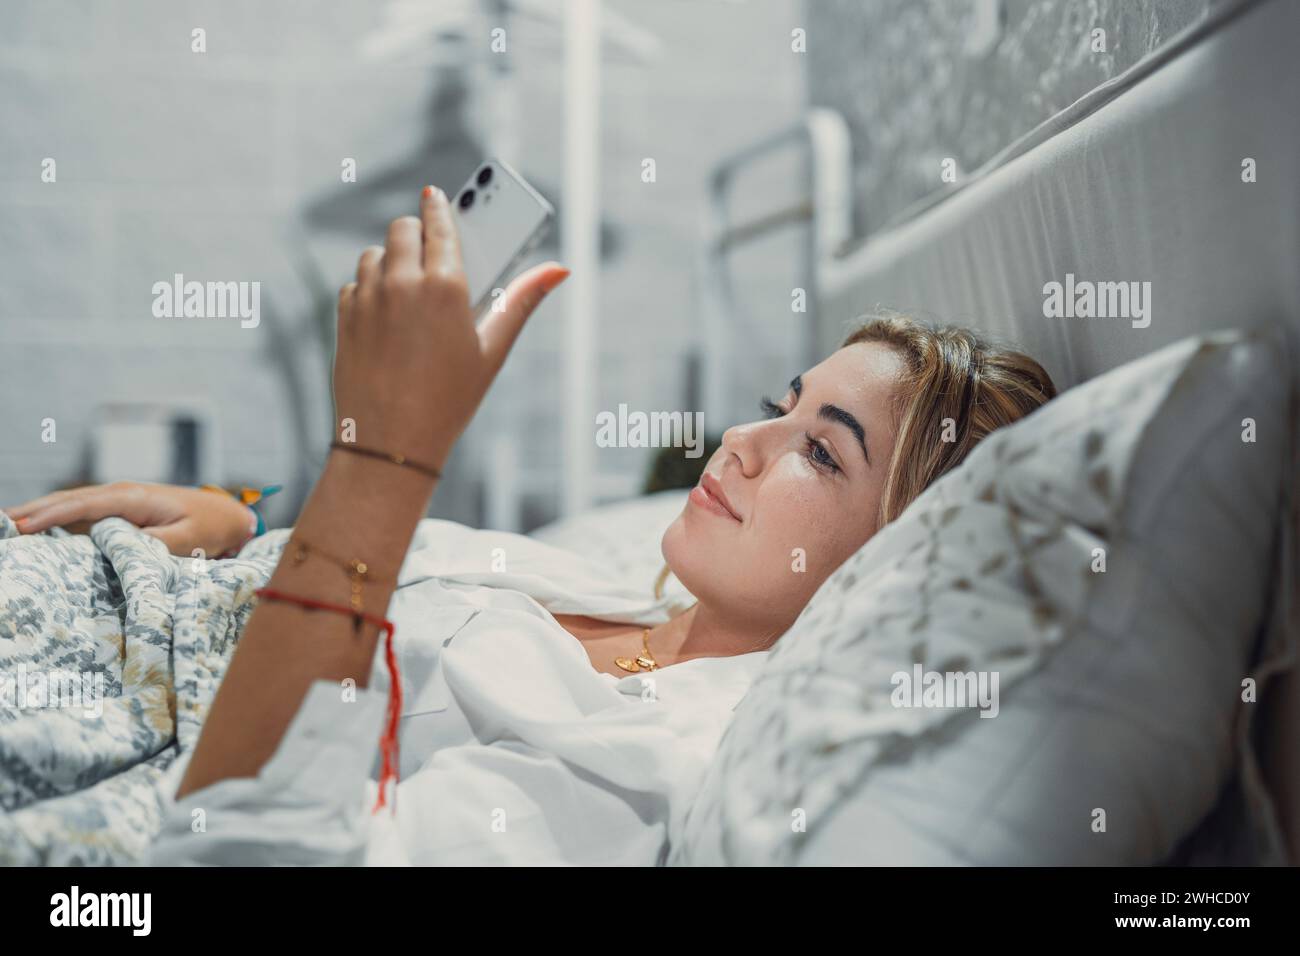 Addiction aux gadgets. Calme souriant jeune femme ou adolescente couchée au lit confortable tenant le téléphone portable dans les mains regardant l'écran de chat vérifiant le compte de réseau social avant de s'endormir ou après le réveil Banque D'Images